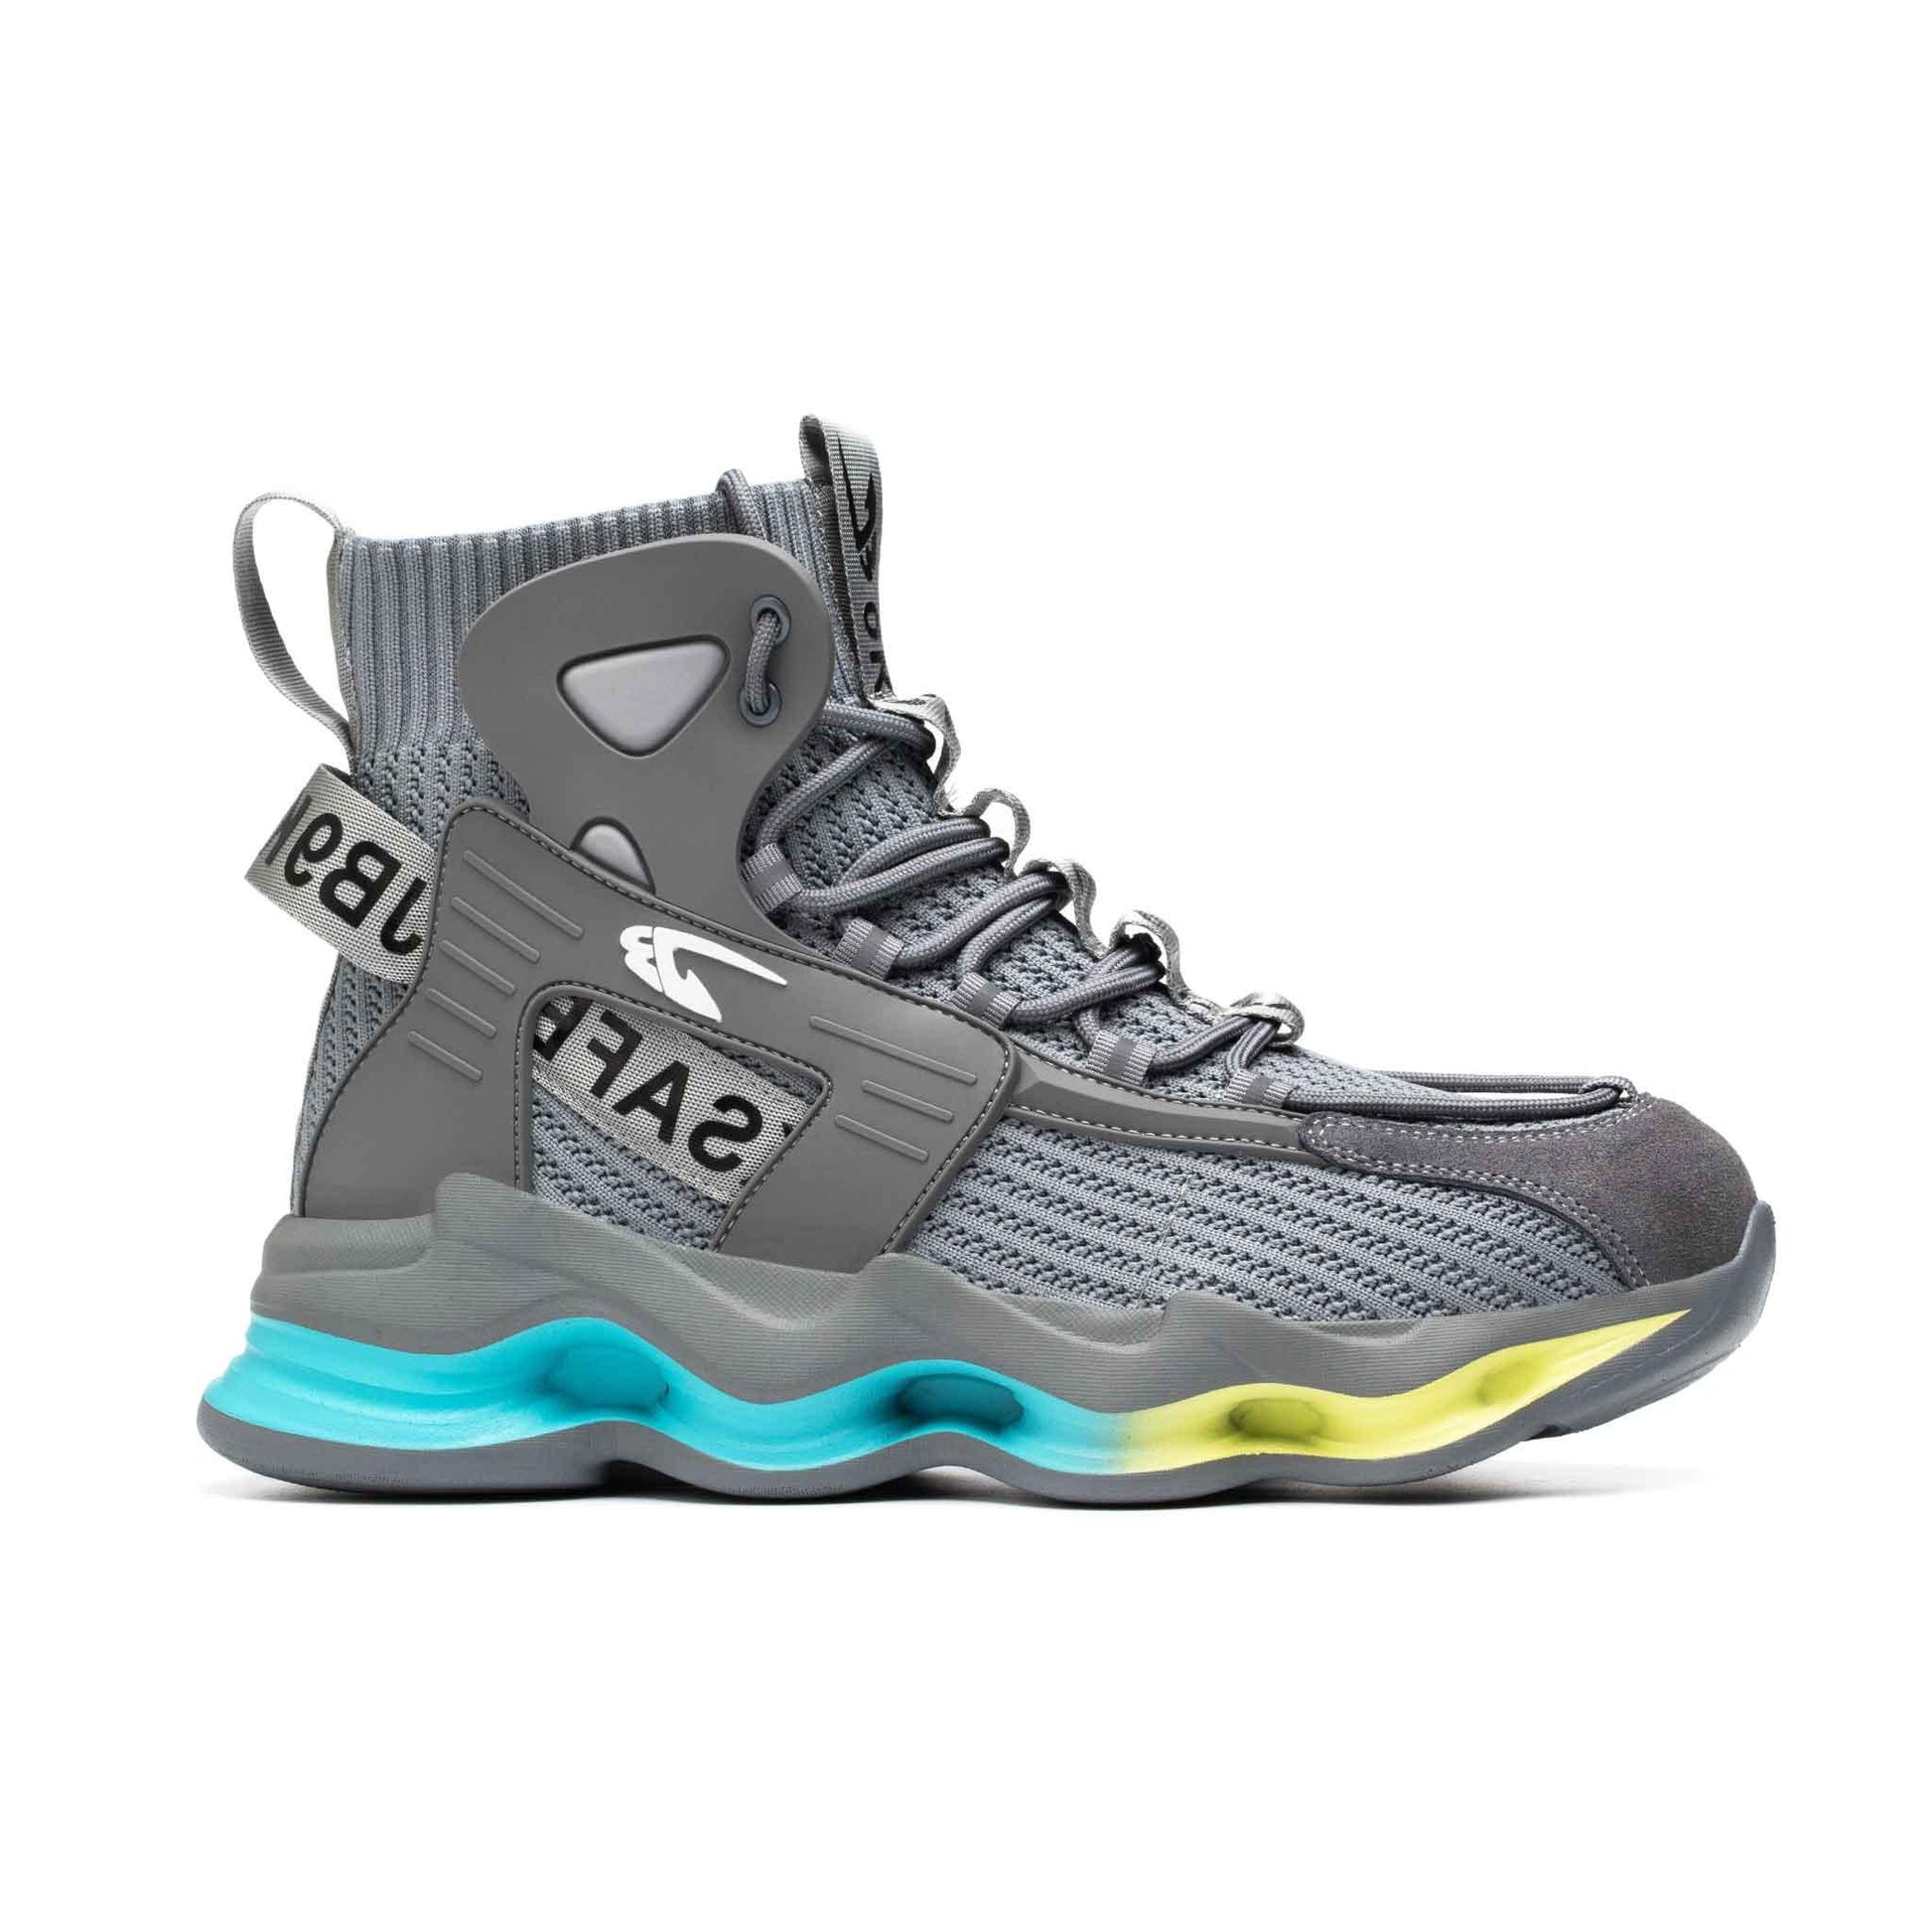 Men's Steel Toe Boots - Lightweight | B113 - USINE PRO Footwear